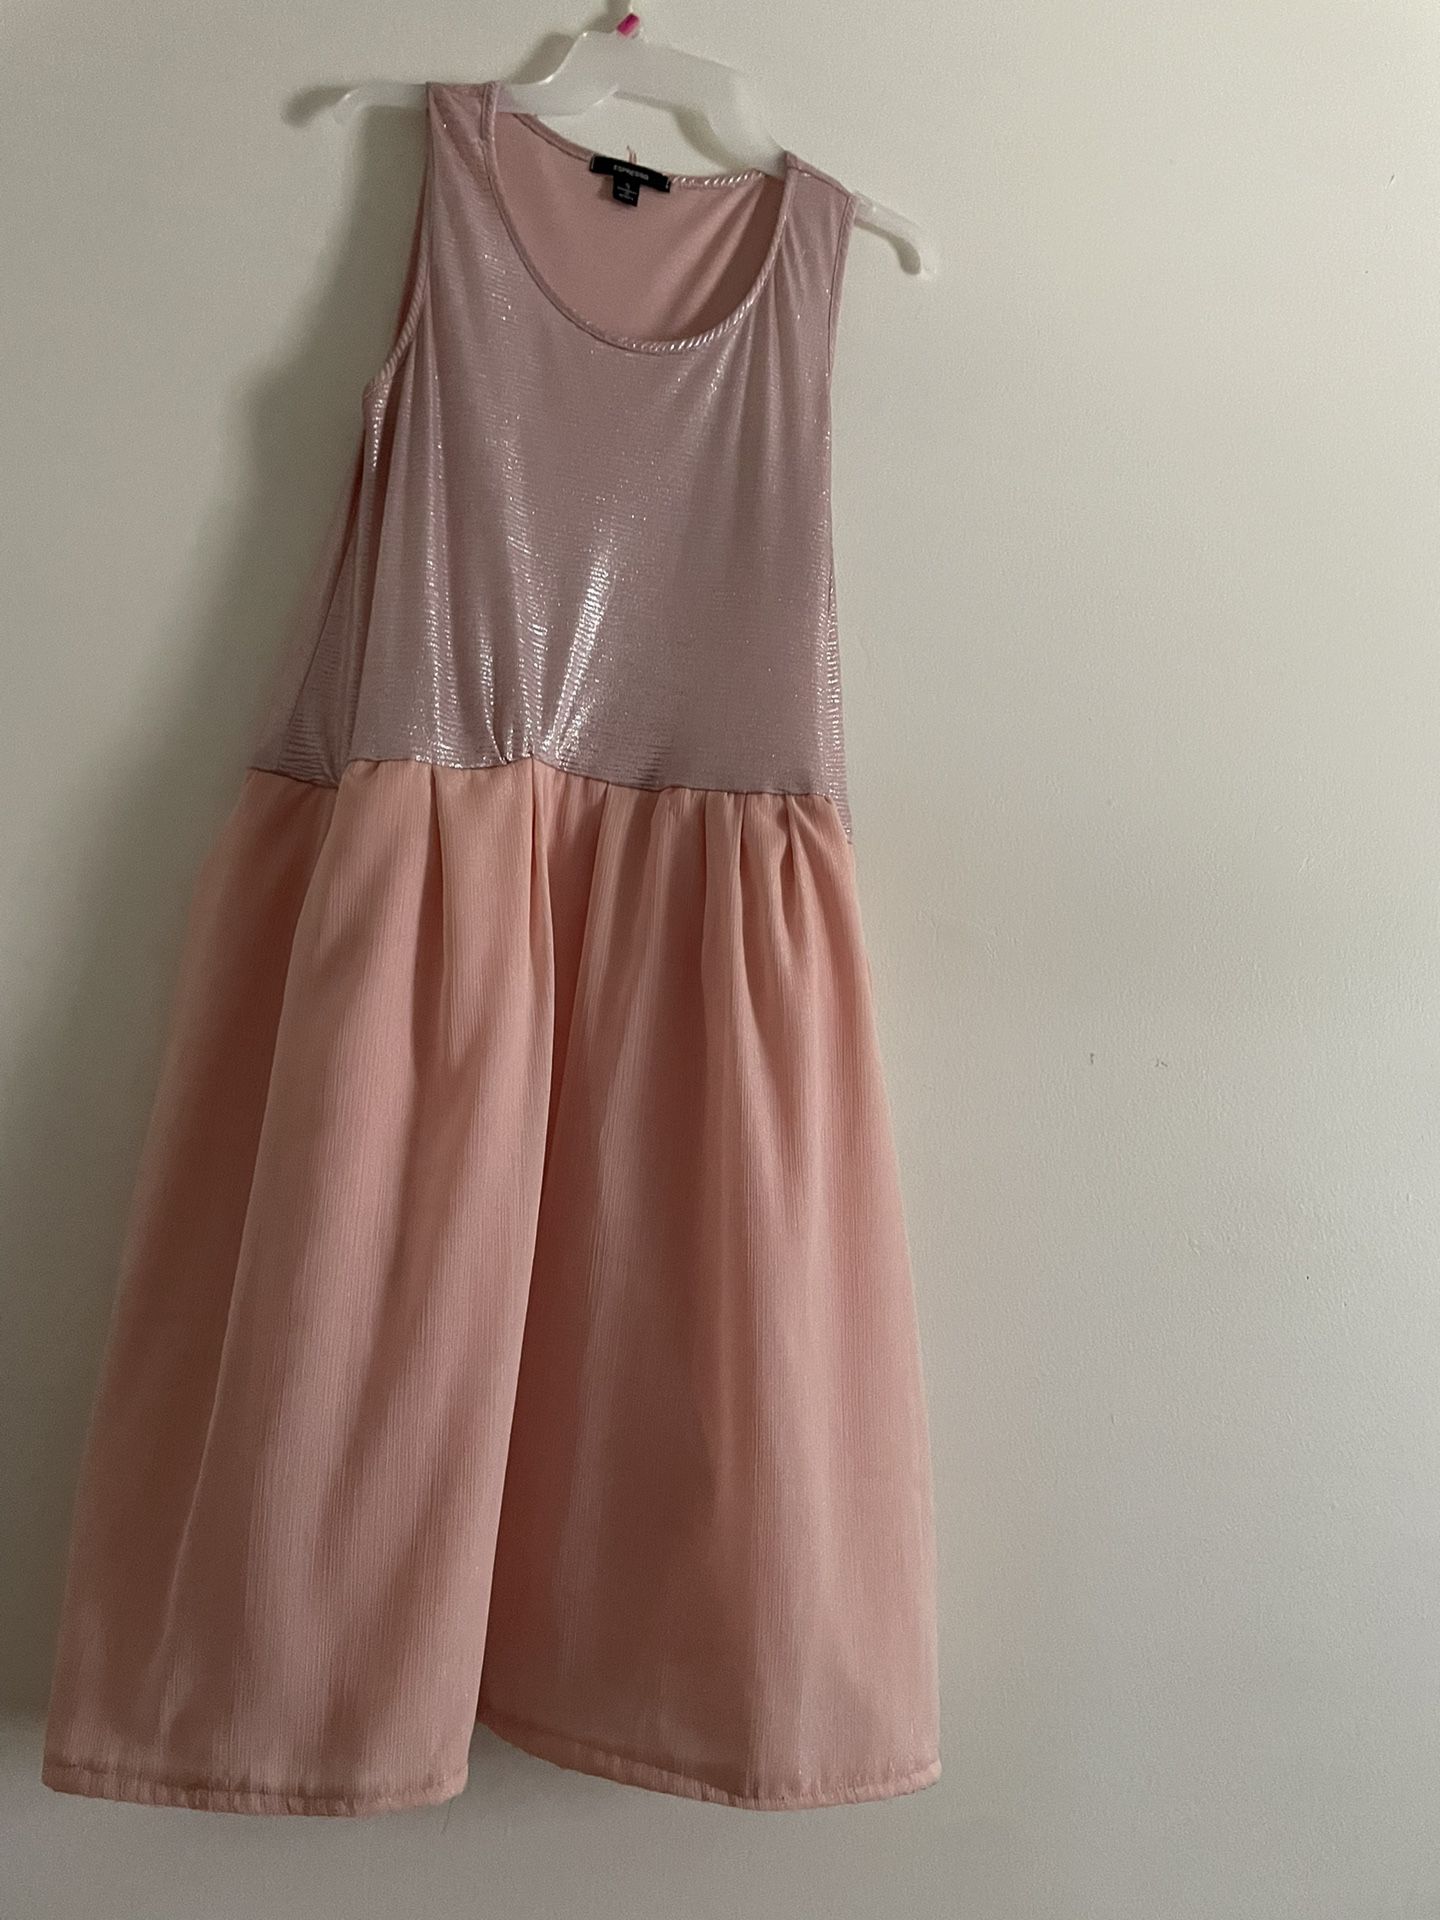 Pink /Melon Dress 